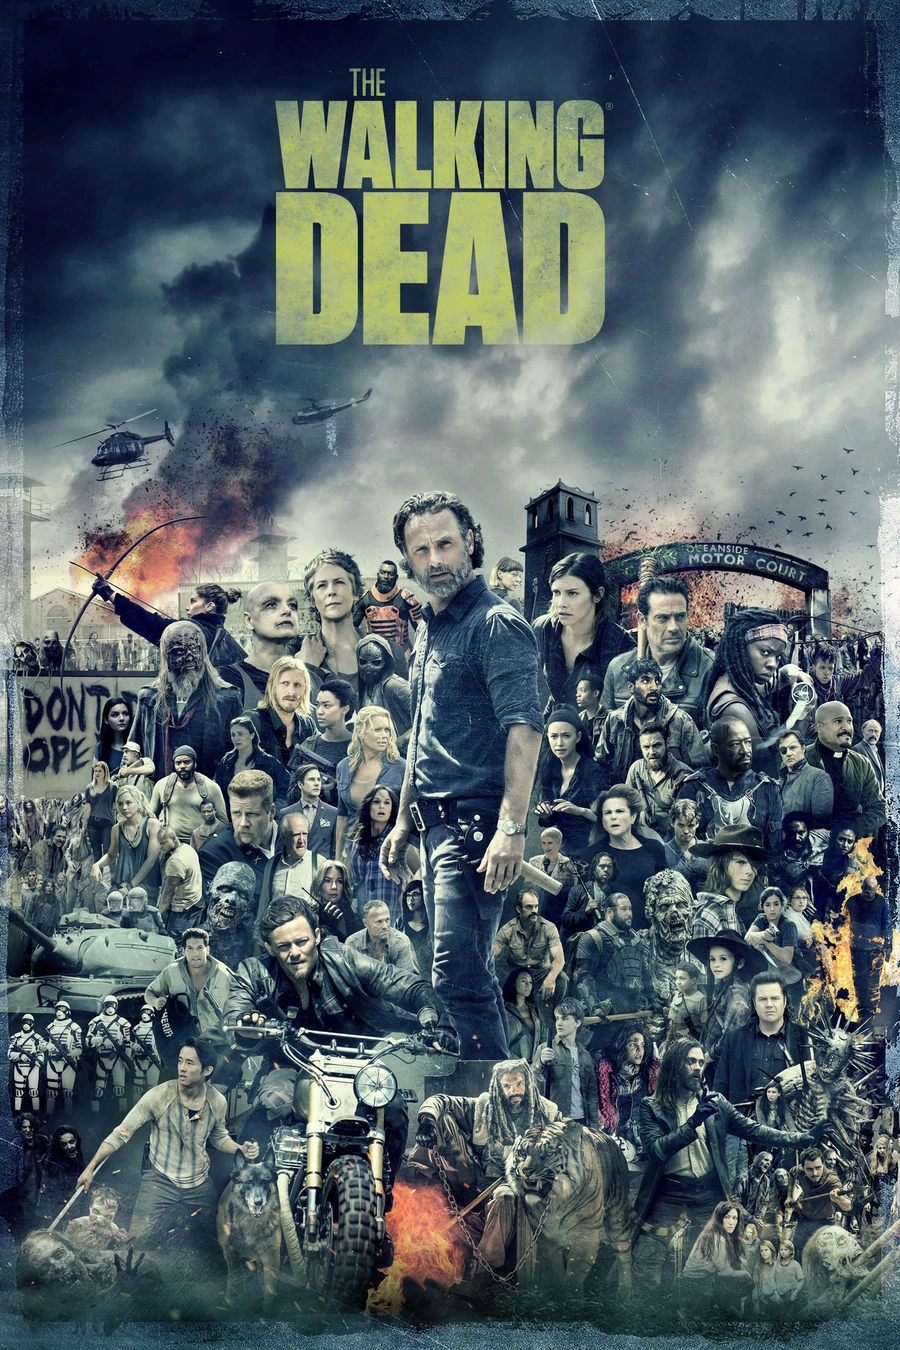 En honor a la finalización del drama postapocalíptico «The Walking Dead», cuyo último episodio se emitió el 20 de noviembre, AMC ha preparado este collage de carteles con todos los personajes.